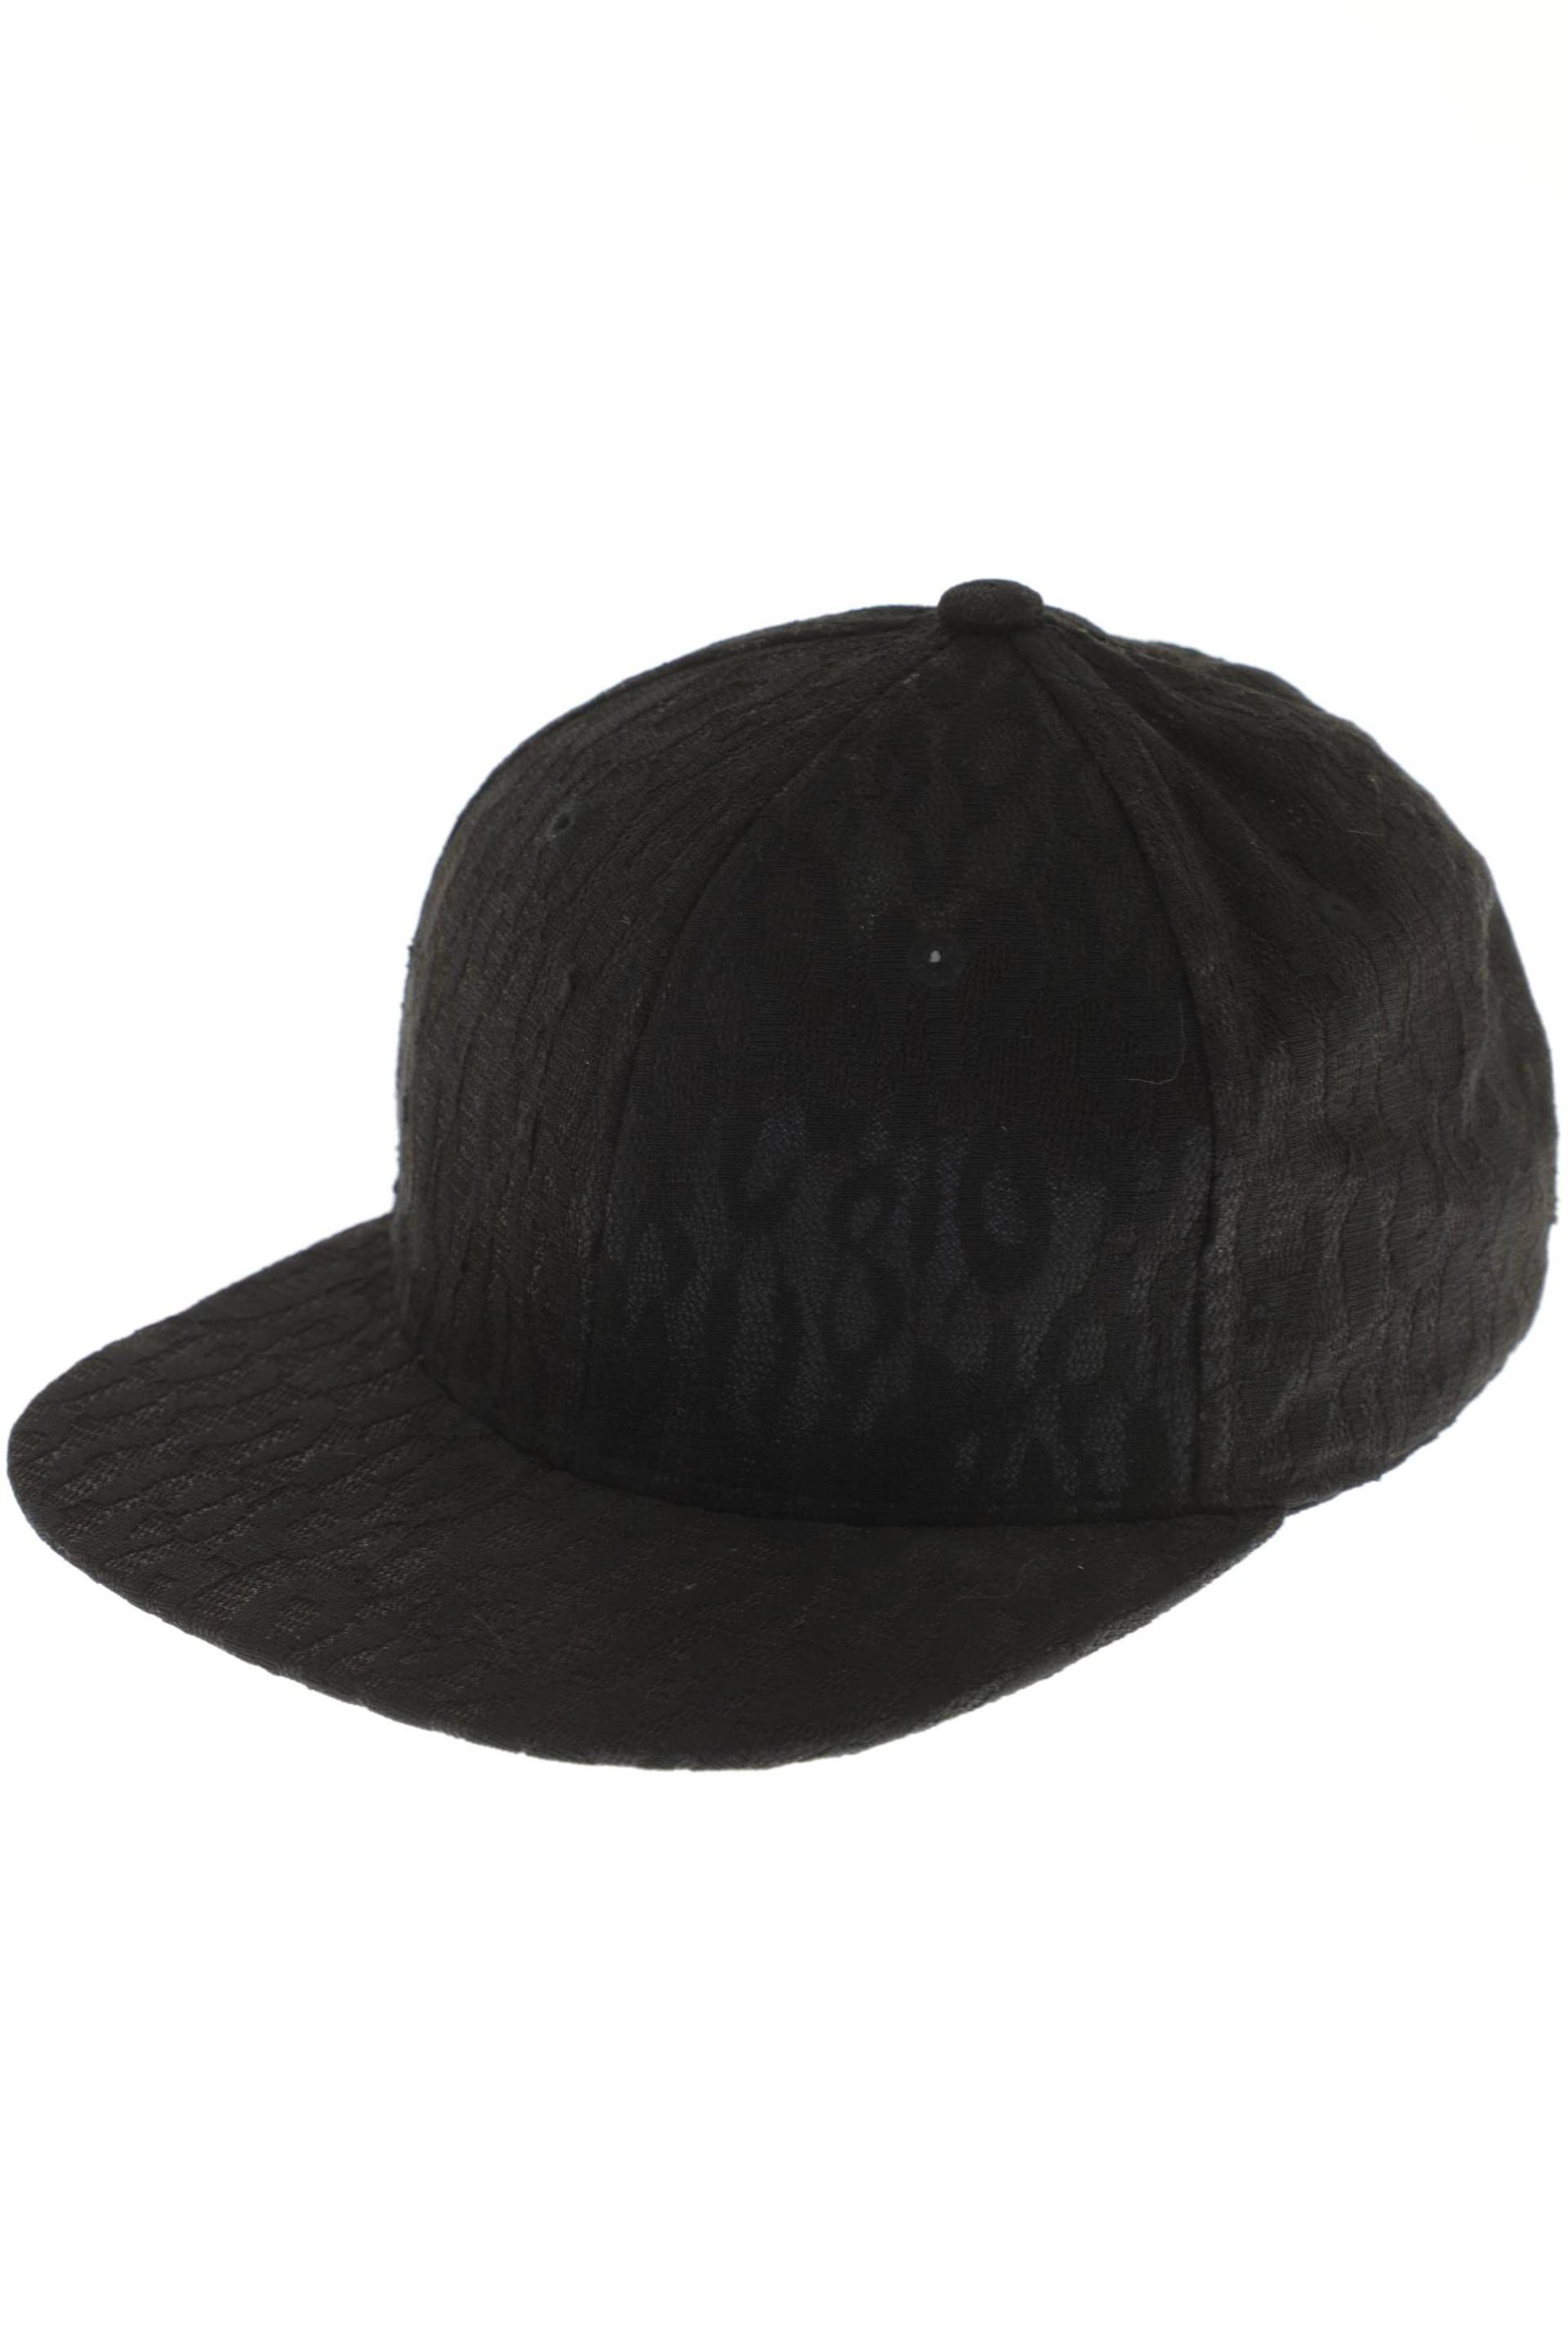 H&M Damen Hut/Mütze, schwarz, Gr. 56 von H&M